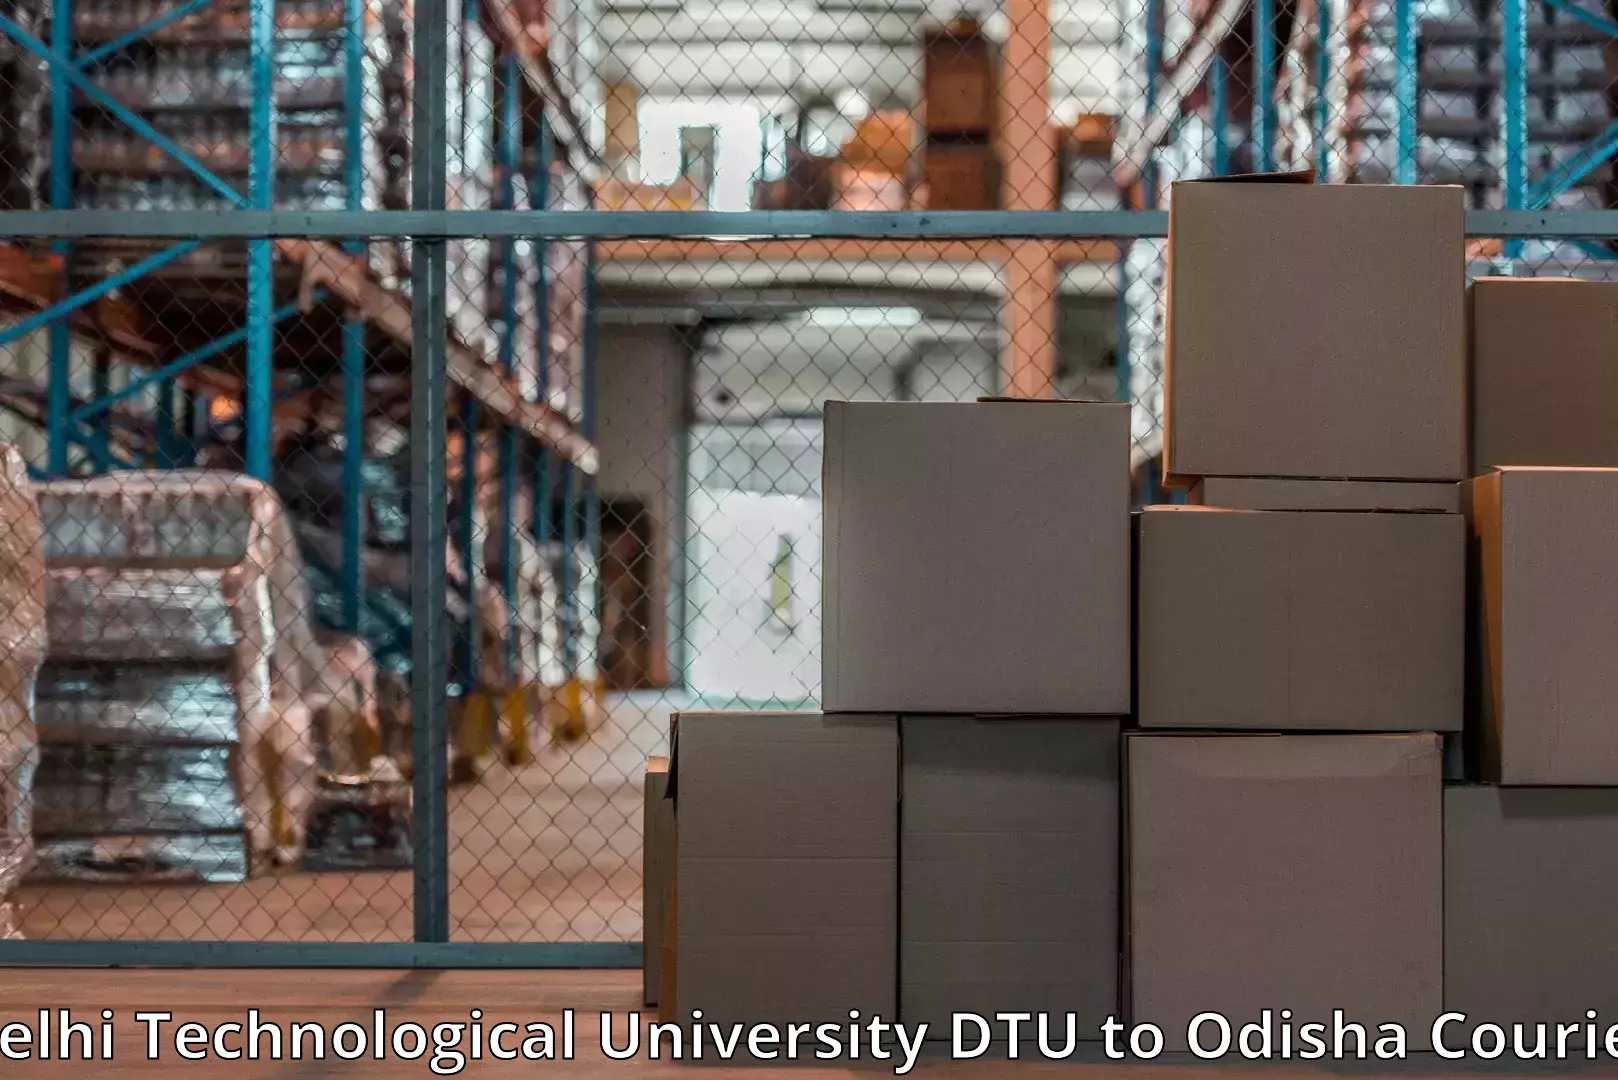 Online household goods transport in Delhi Technological University DTU to Bheden